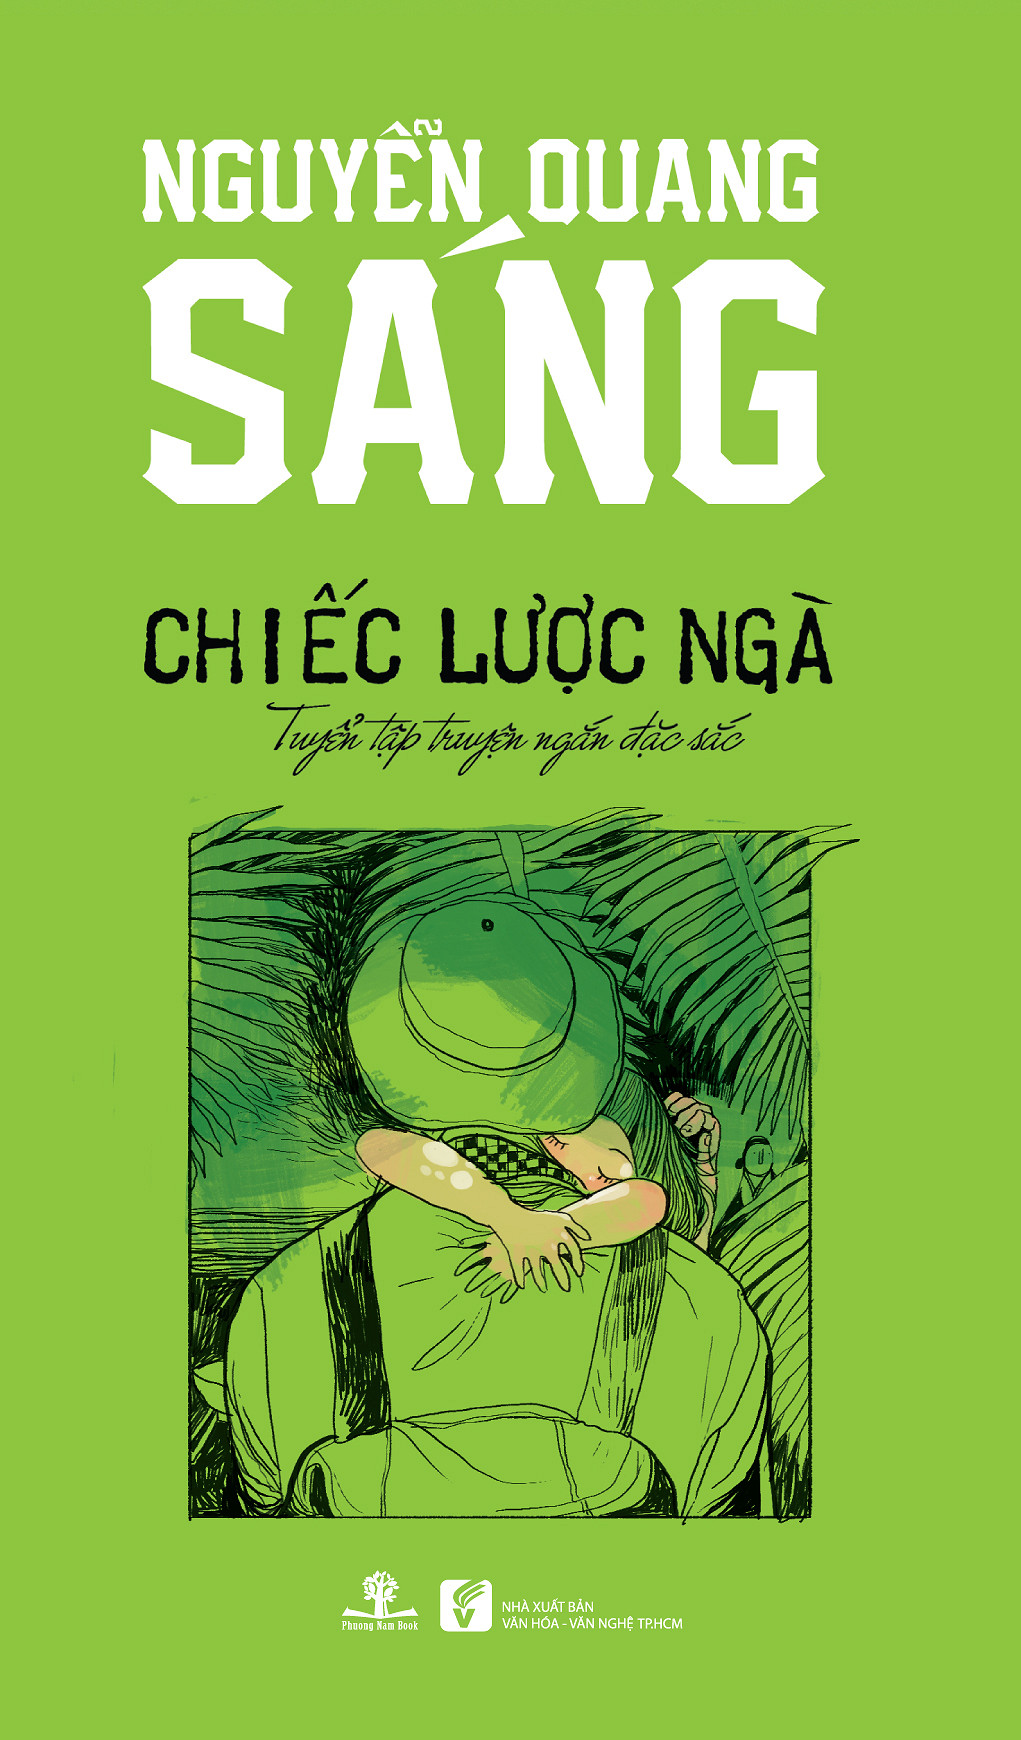 Chiếc Lược Ngà - Nguyễn Quang Sáng